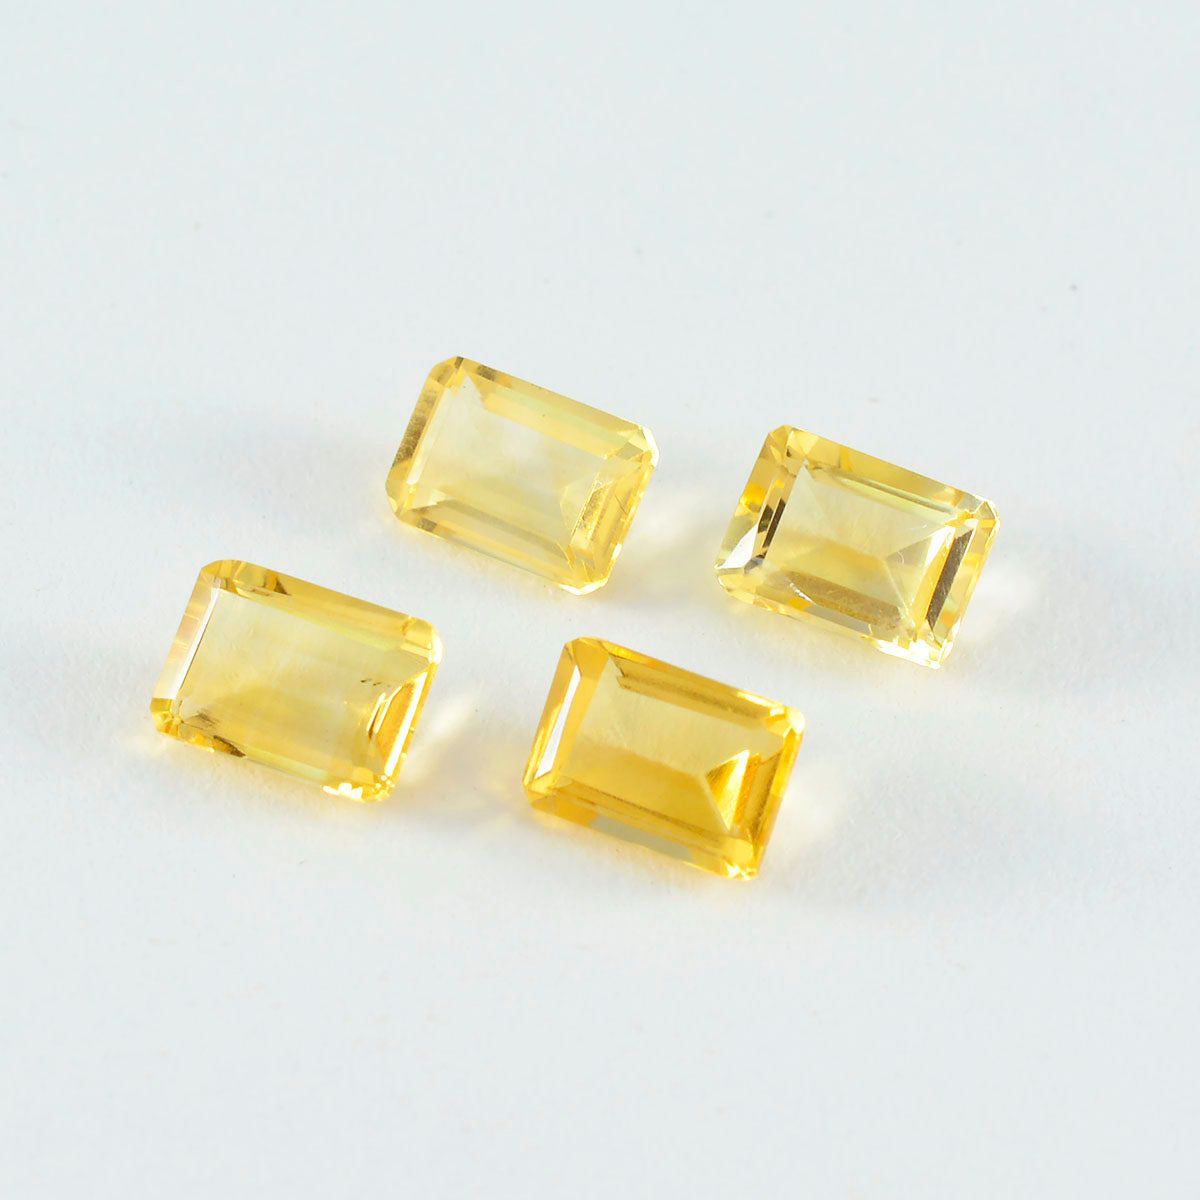 Riyogems 1PC echte gele citrien gefacetteerde 7x9 mm achthoekige vorm mooie kwaliteit losse edelsteen